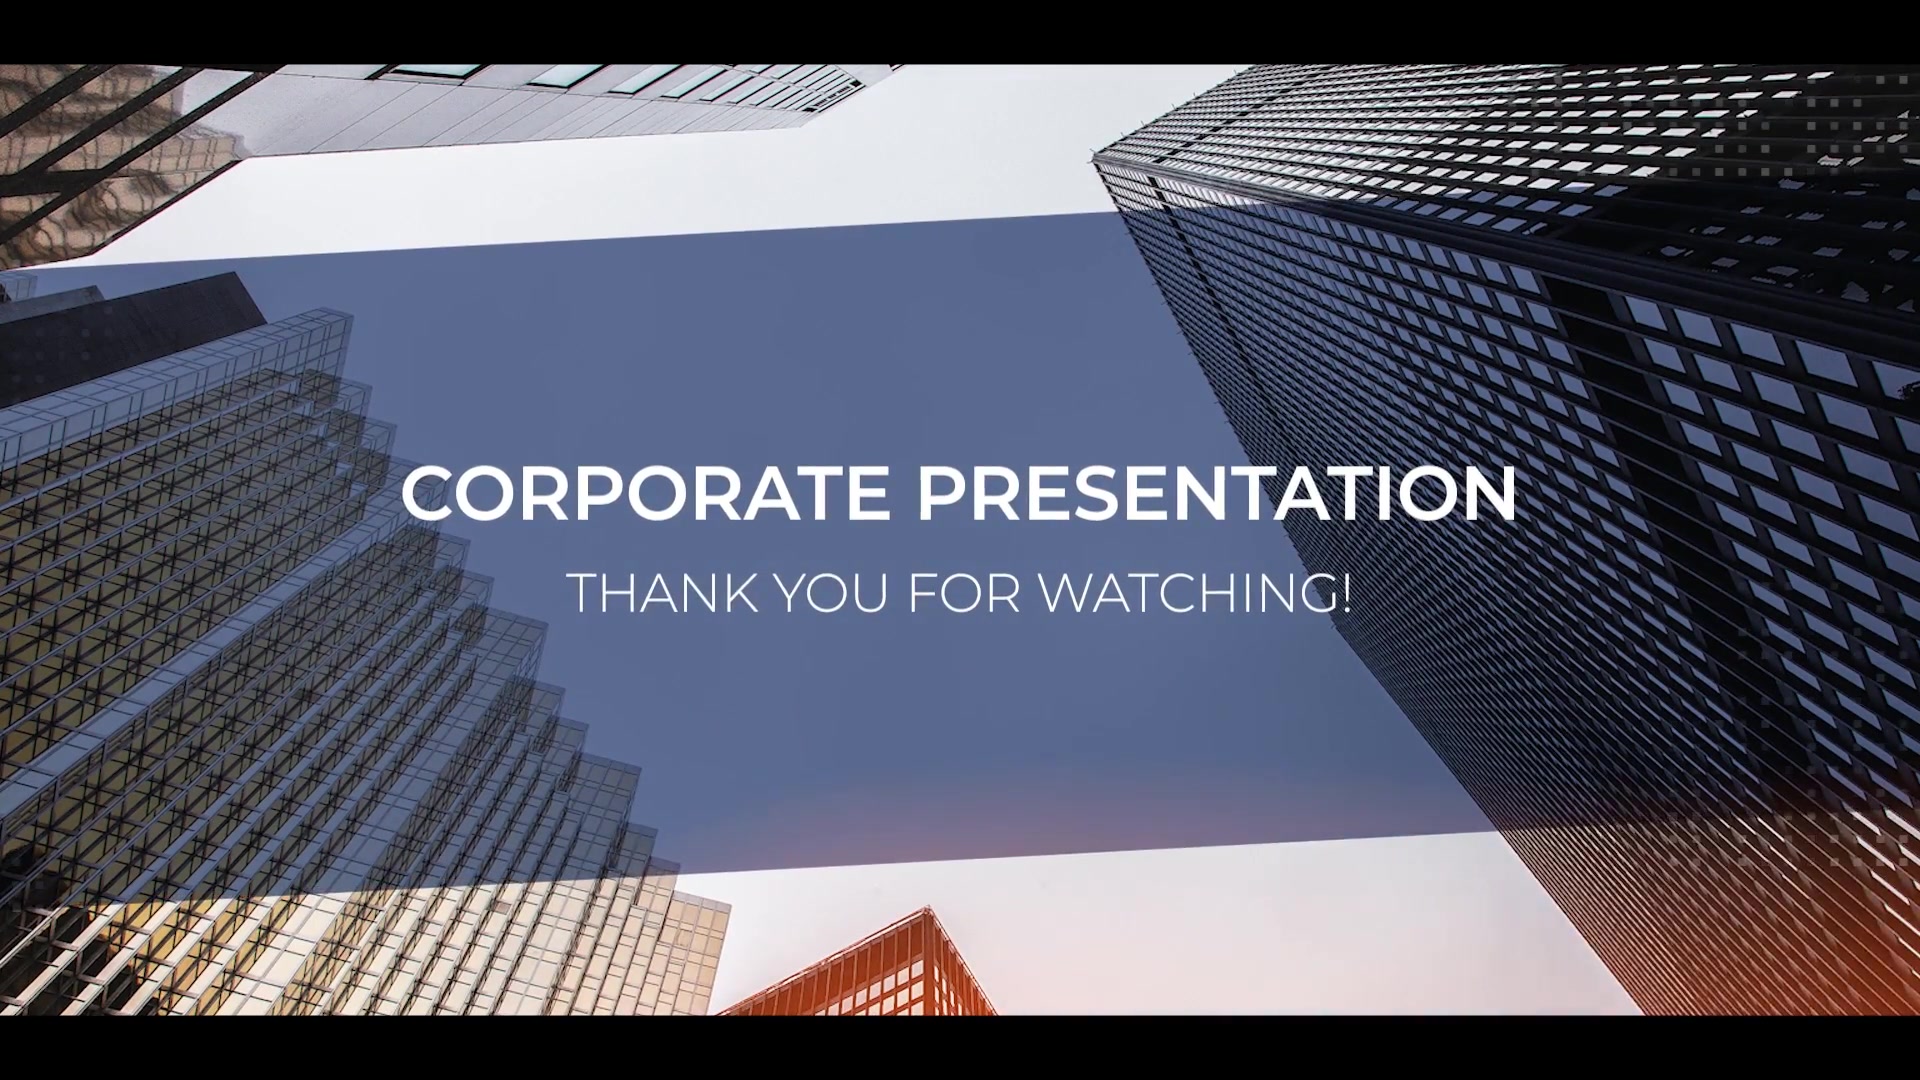 Corporate Presentation Videohive 25770903 Premiere Pro Image 12